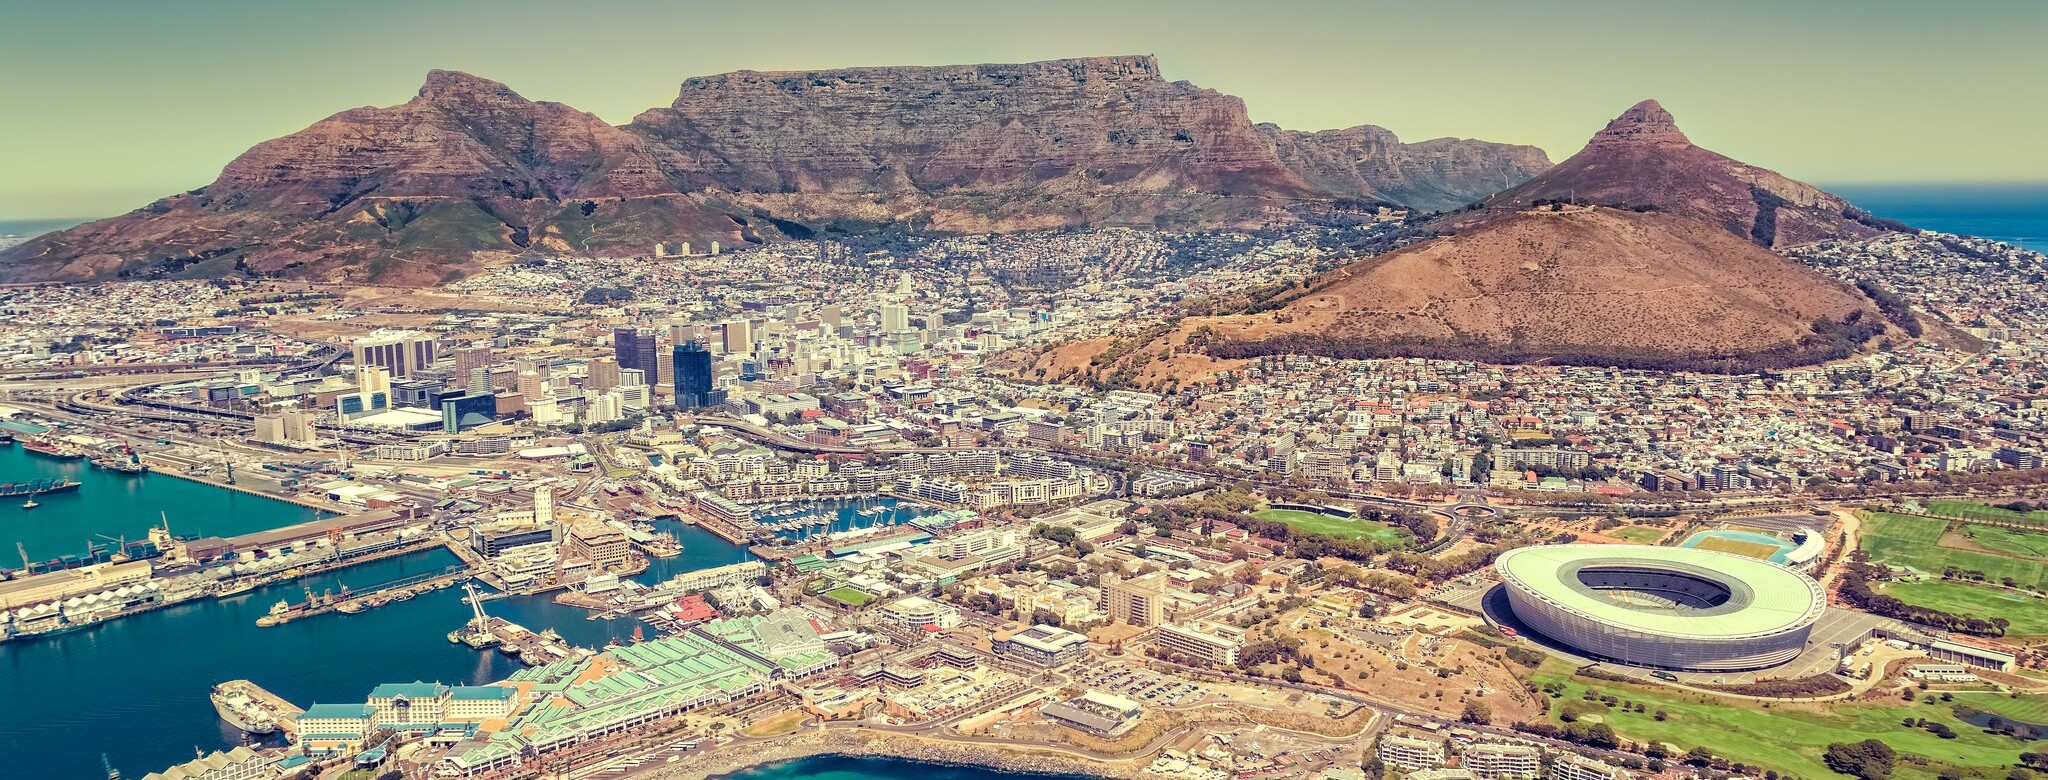 Start und Ziel in der brodelnden Metropole Kapstadt